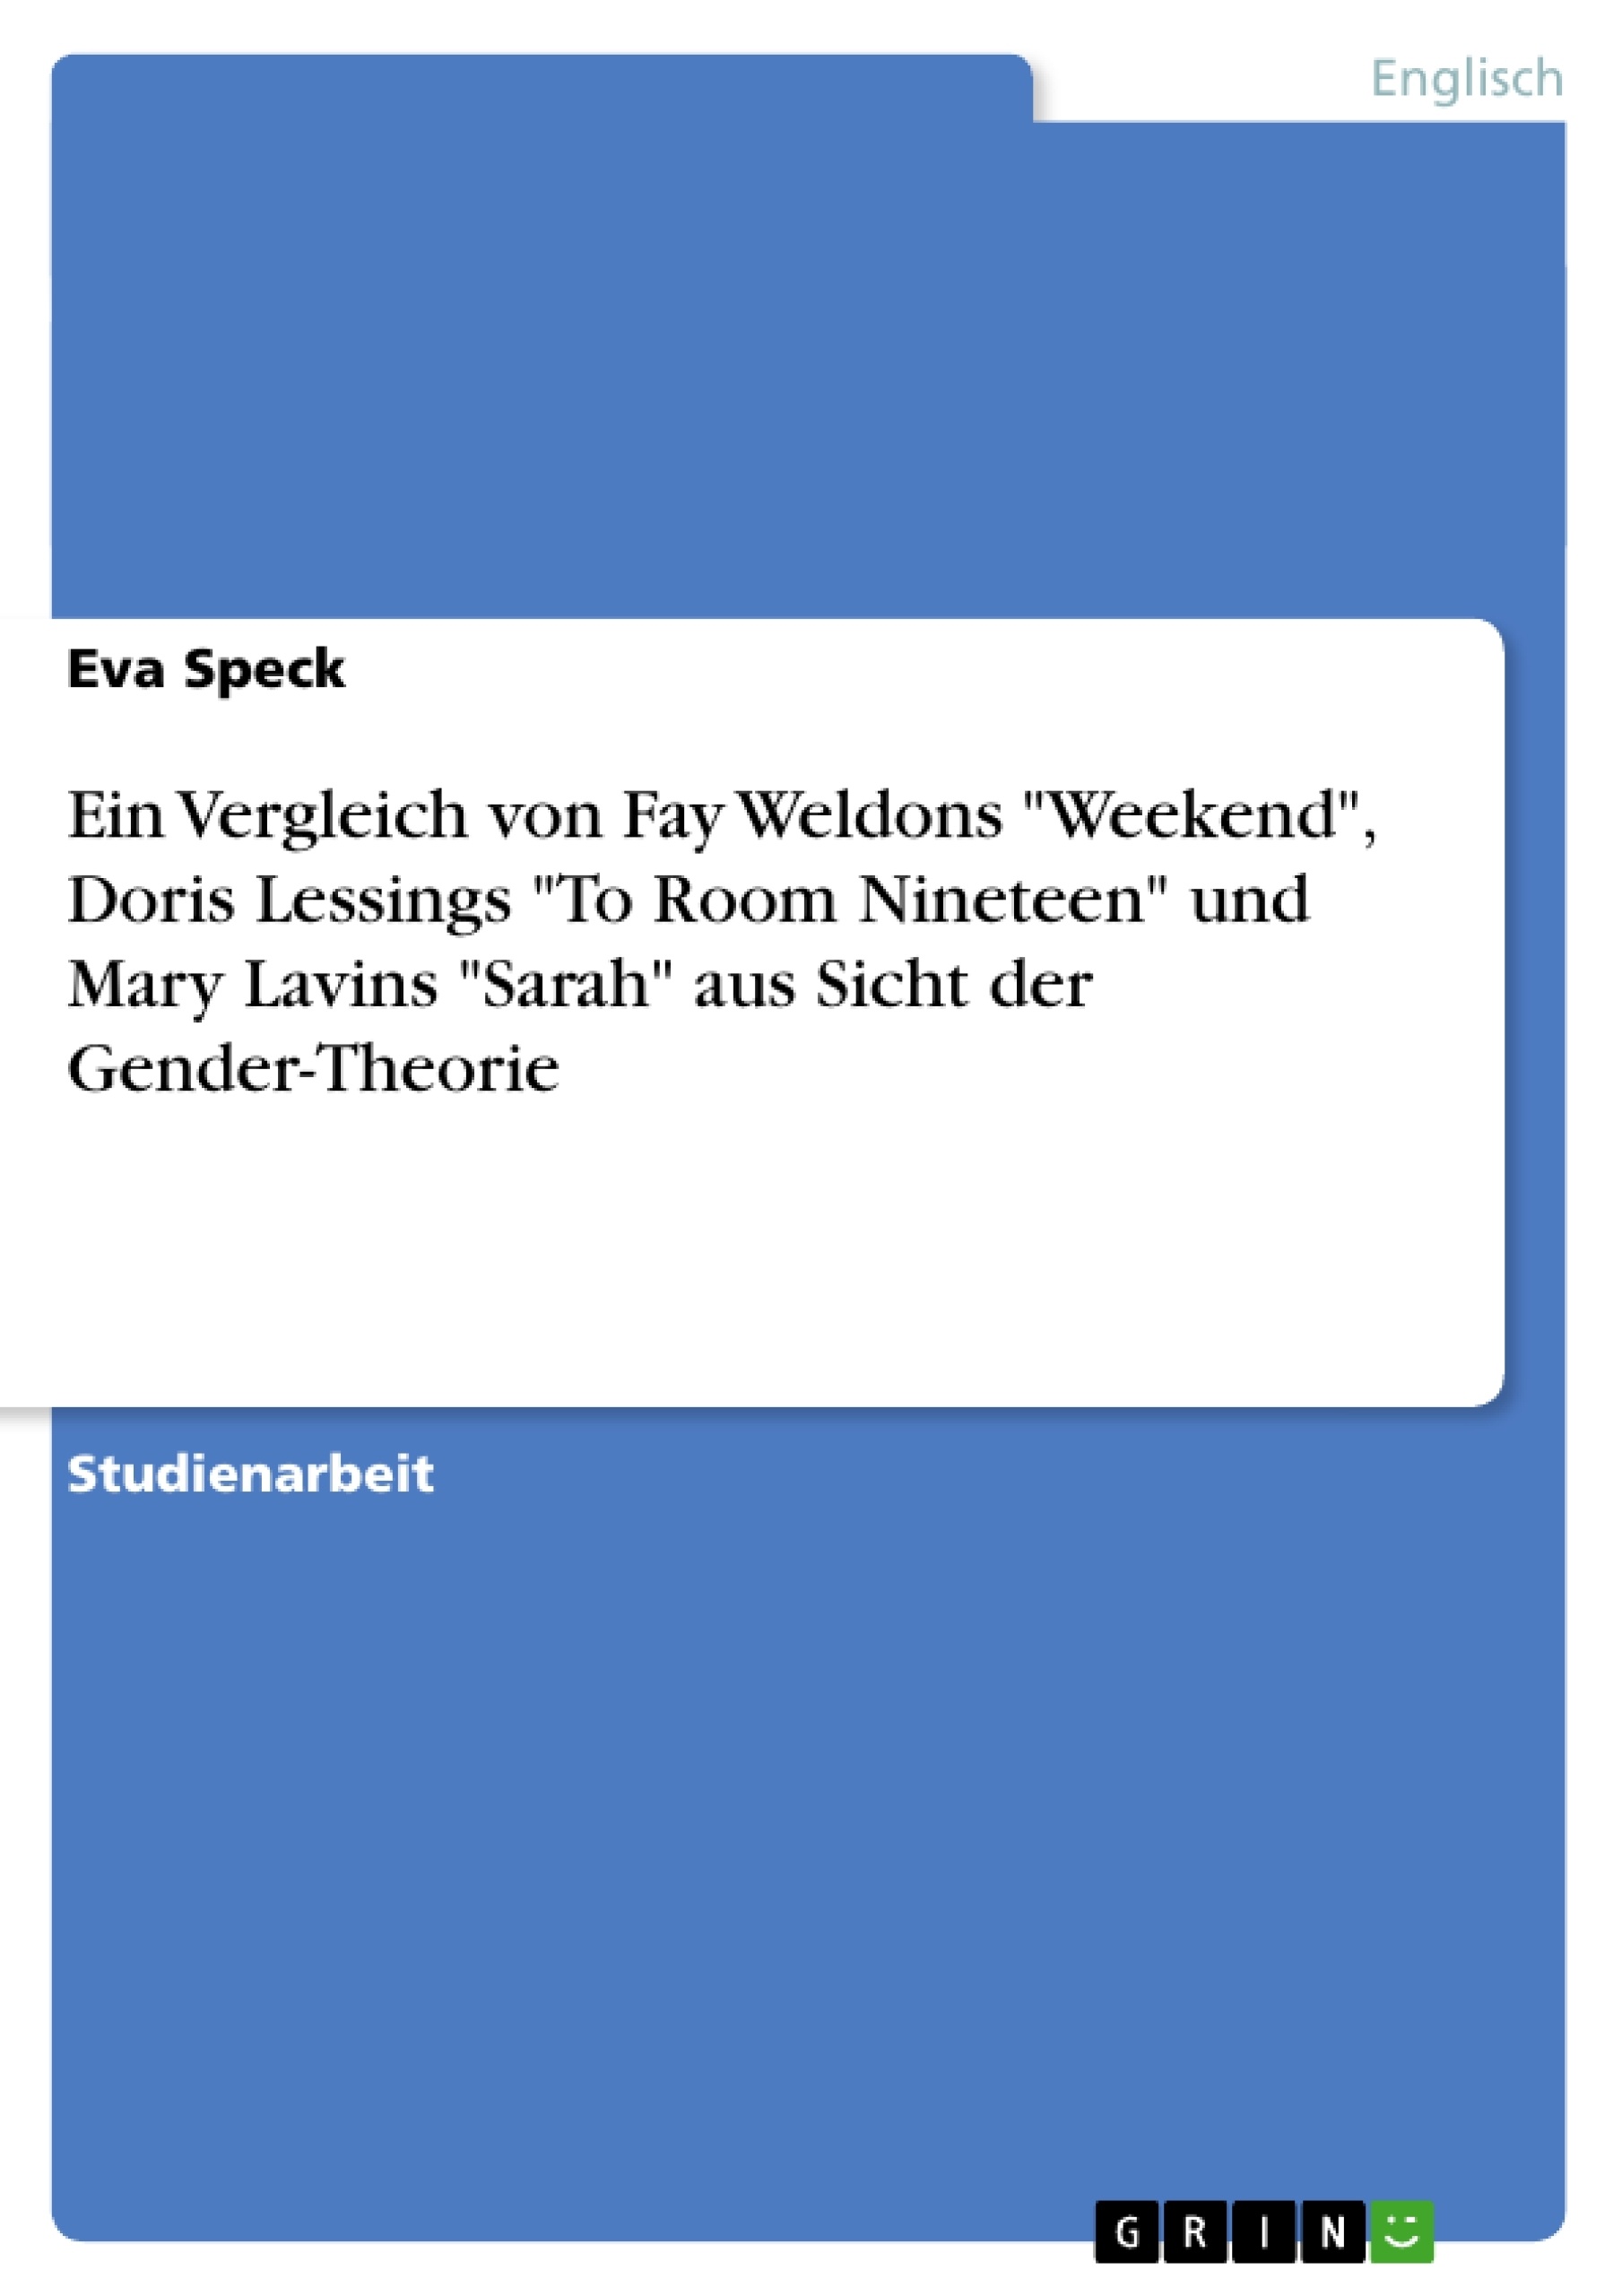 Titre: Ein Vergleich von Fay Weldons "Weekend", Doris Lessings "To Room Nineteen" und Mary Lavins "Sarah" aus Sicht der Gender-Theorie 